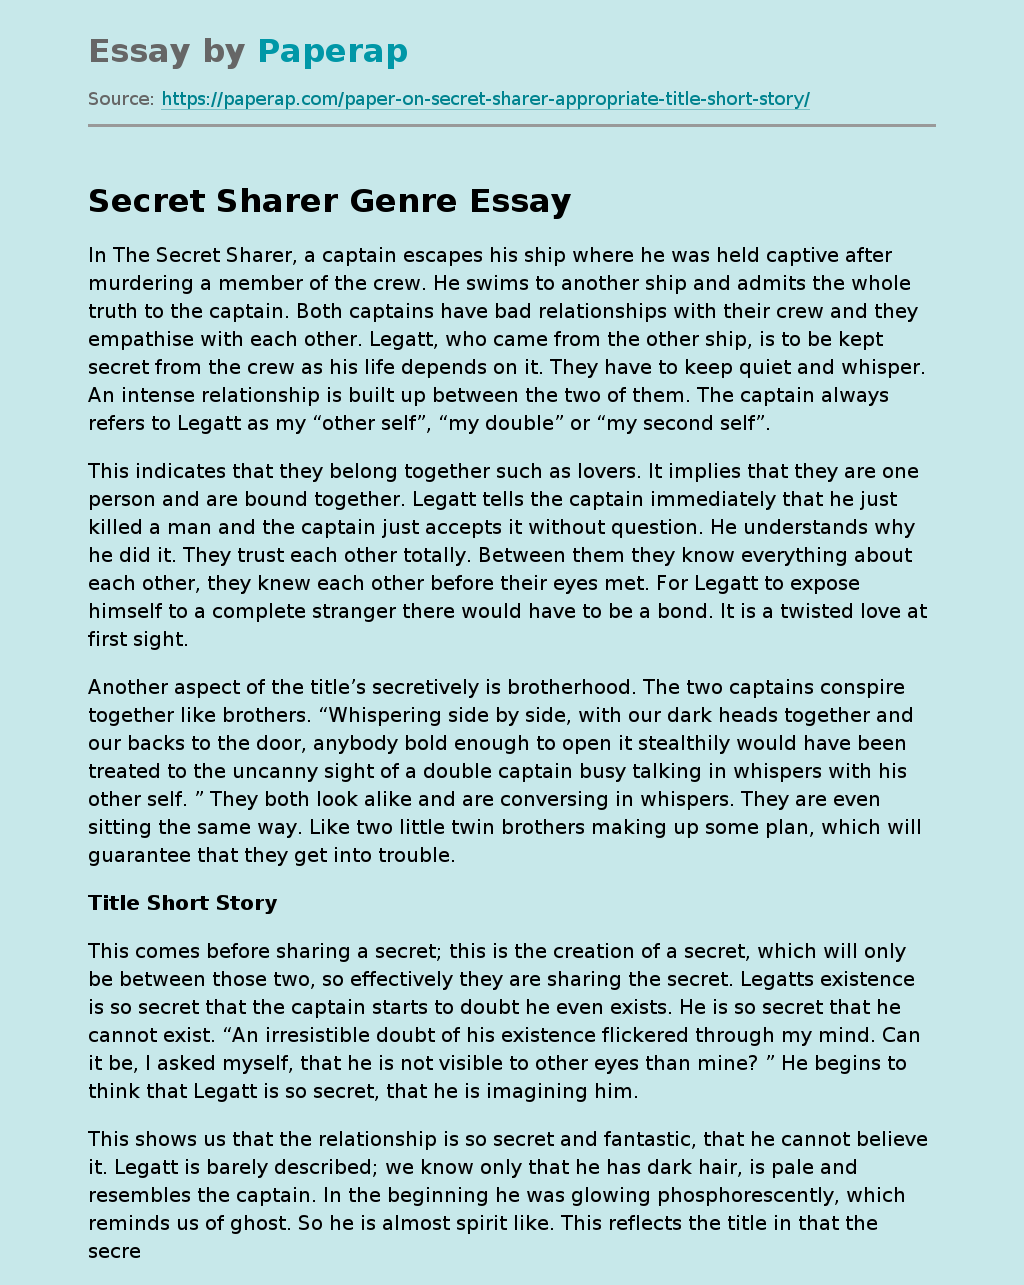 "The Secret Sharer" by Joseph Conrad